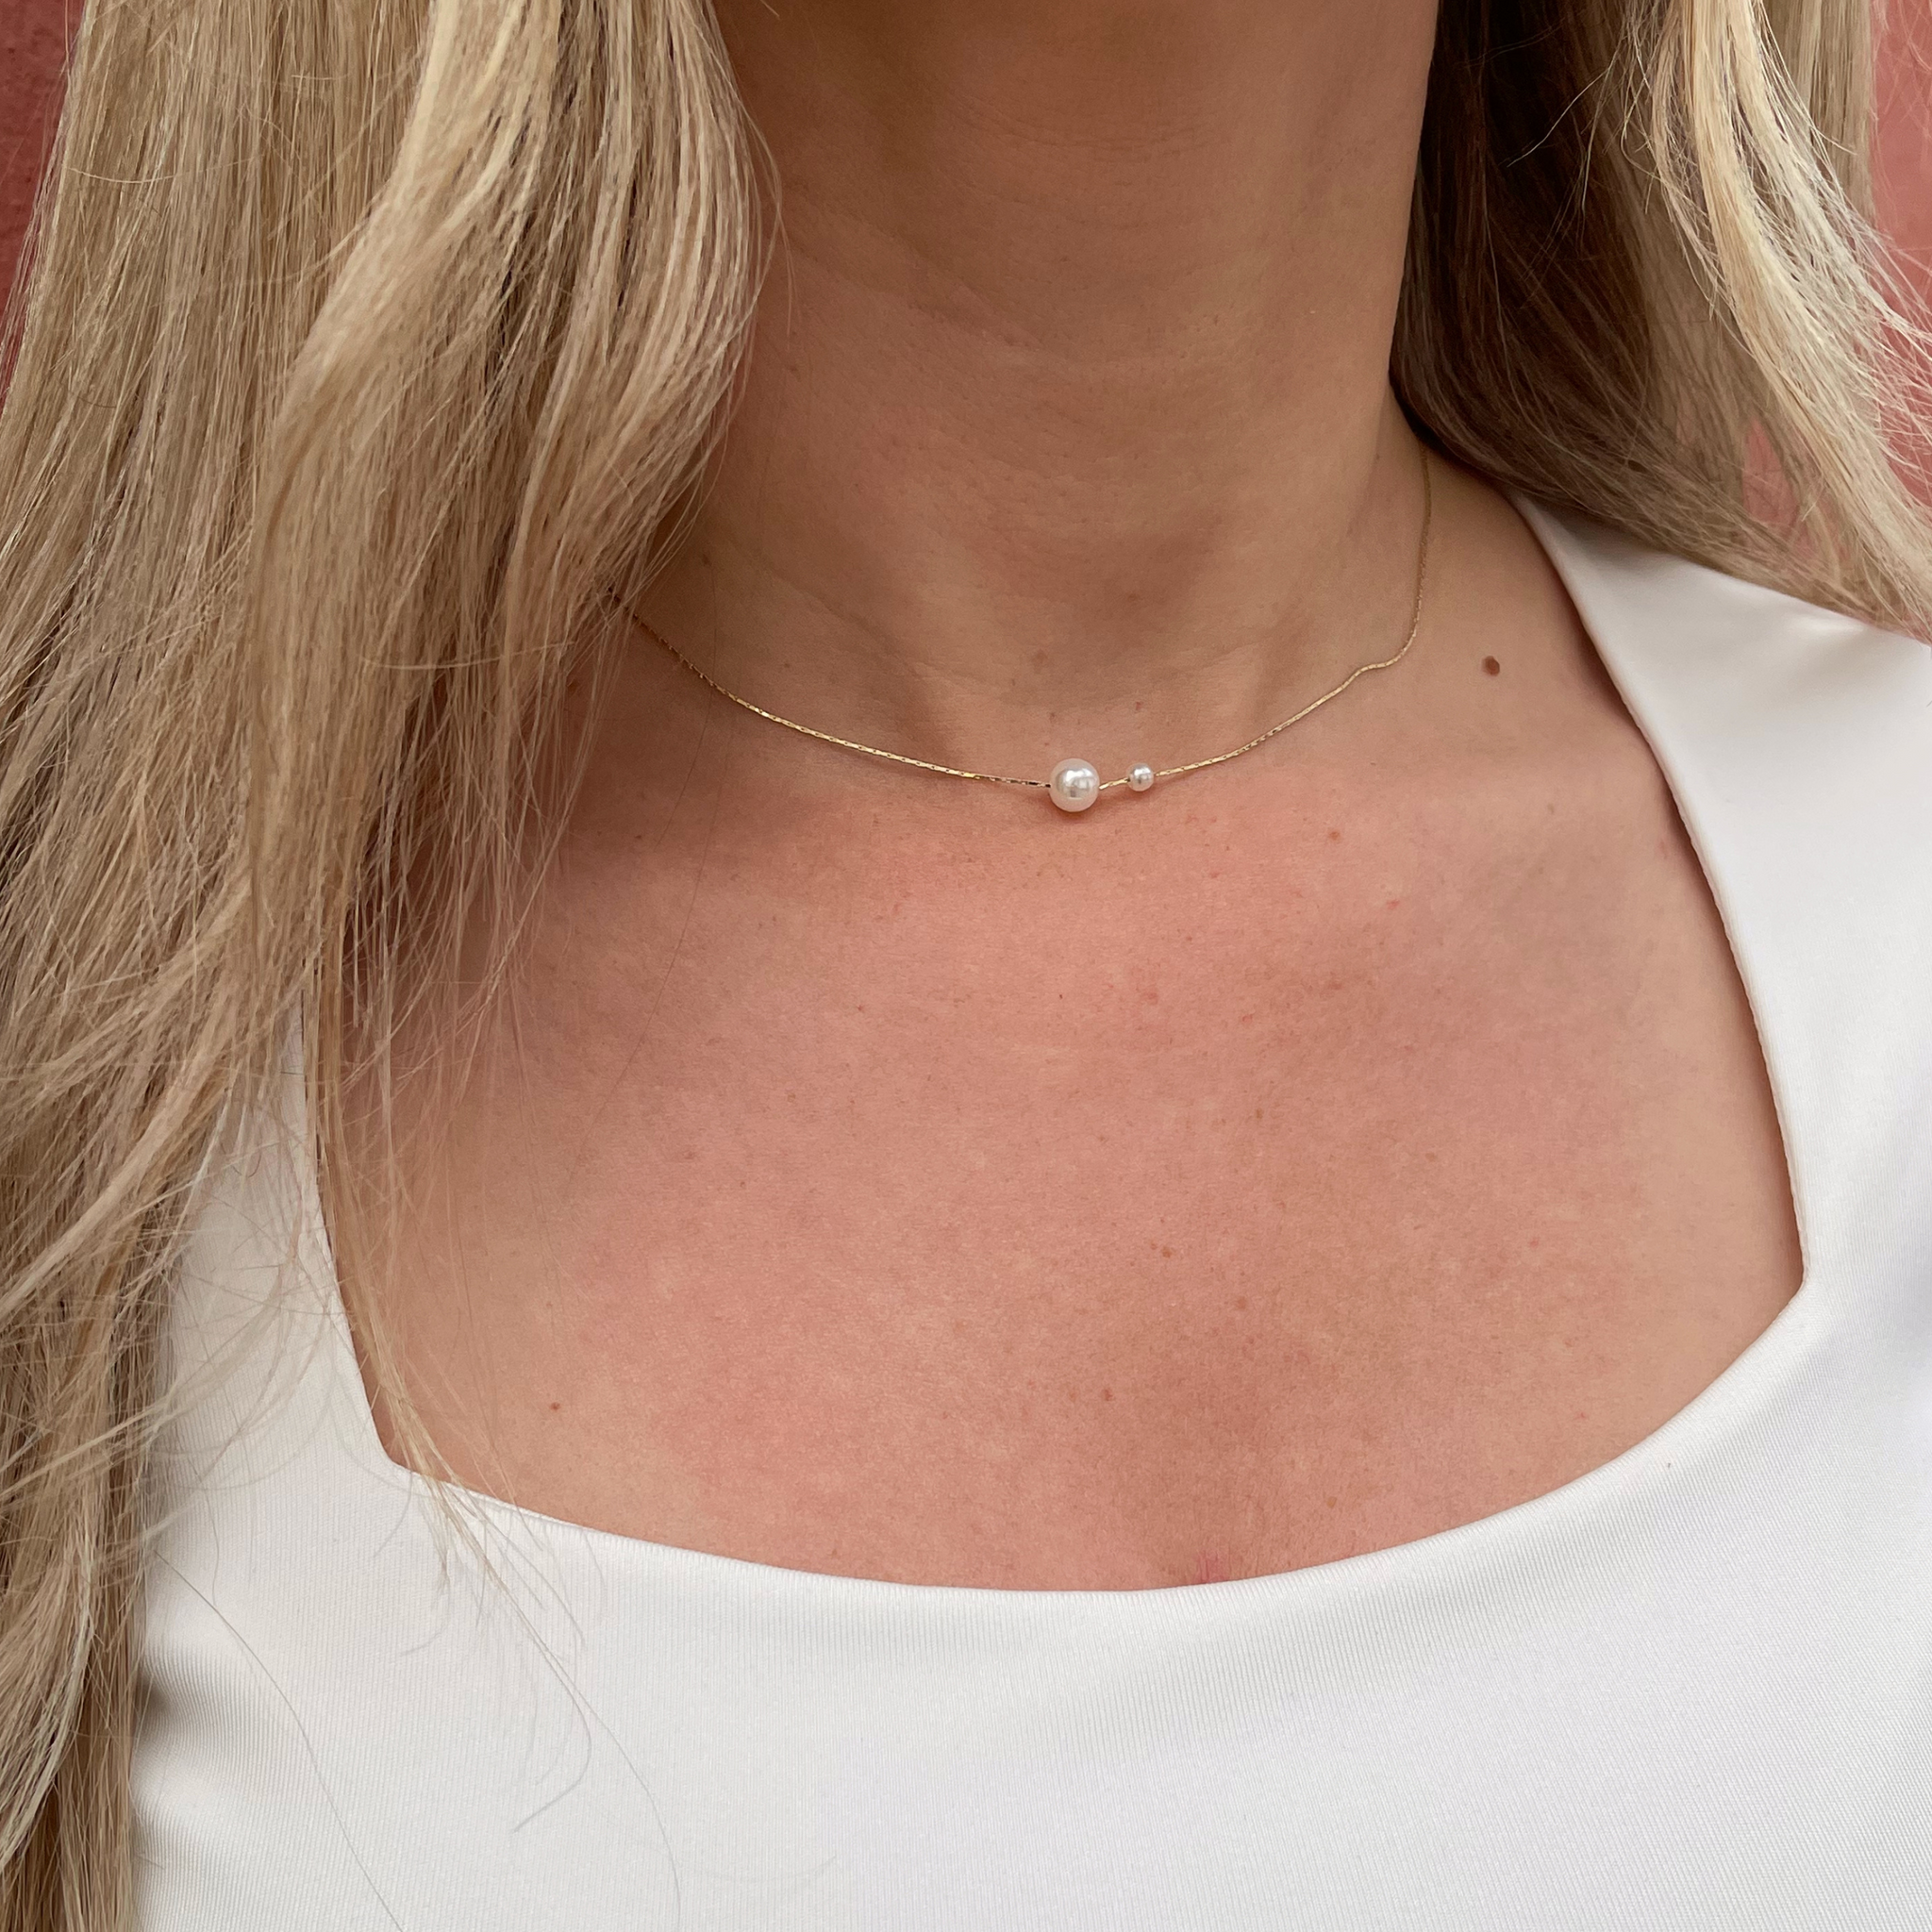 Guld Ella halskæde med 2 flotte perler på i forskellige størrelser, som er med til at give smykket et unikt look.   Halskæden er guldbelagt med 24 karat guld.  Længde: 42 cm - kan justeres Materiale: 24 karat guldbelagt messing, perler